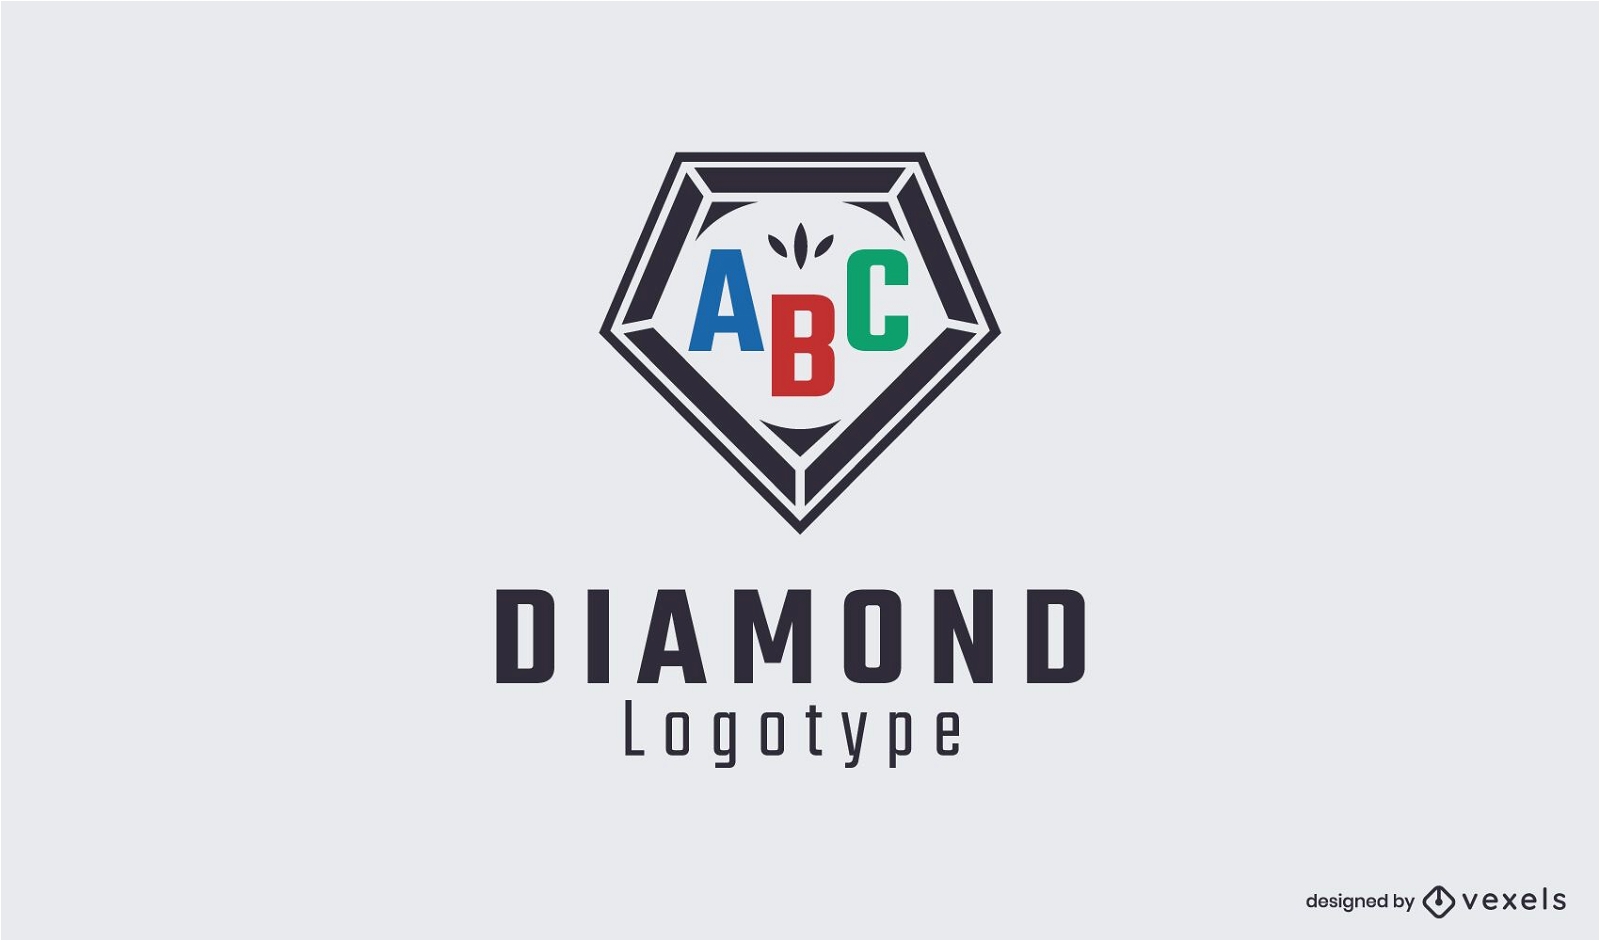 Diamond logo template